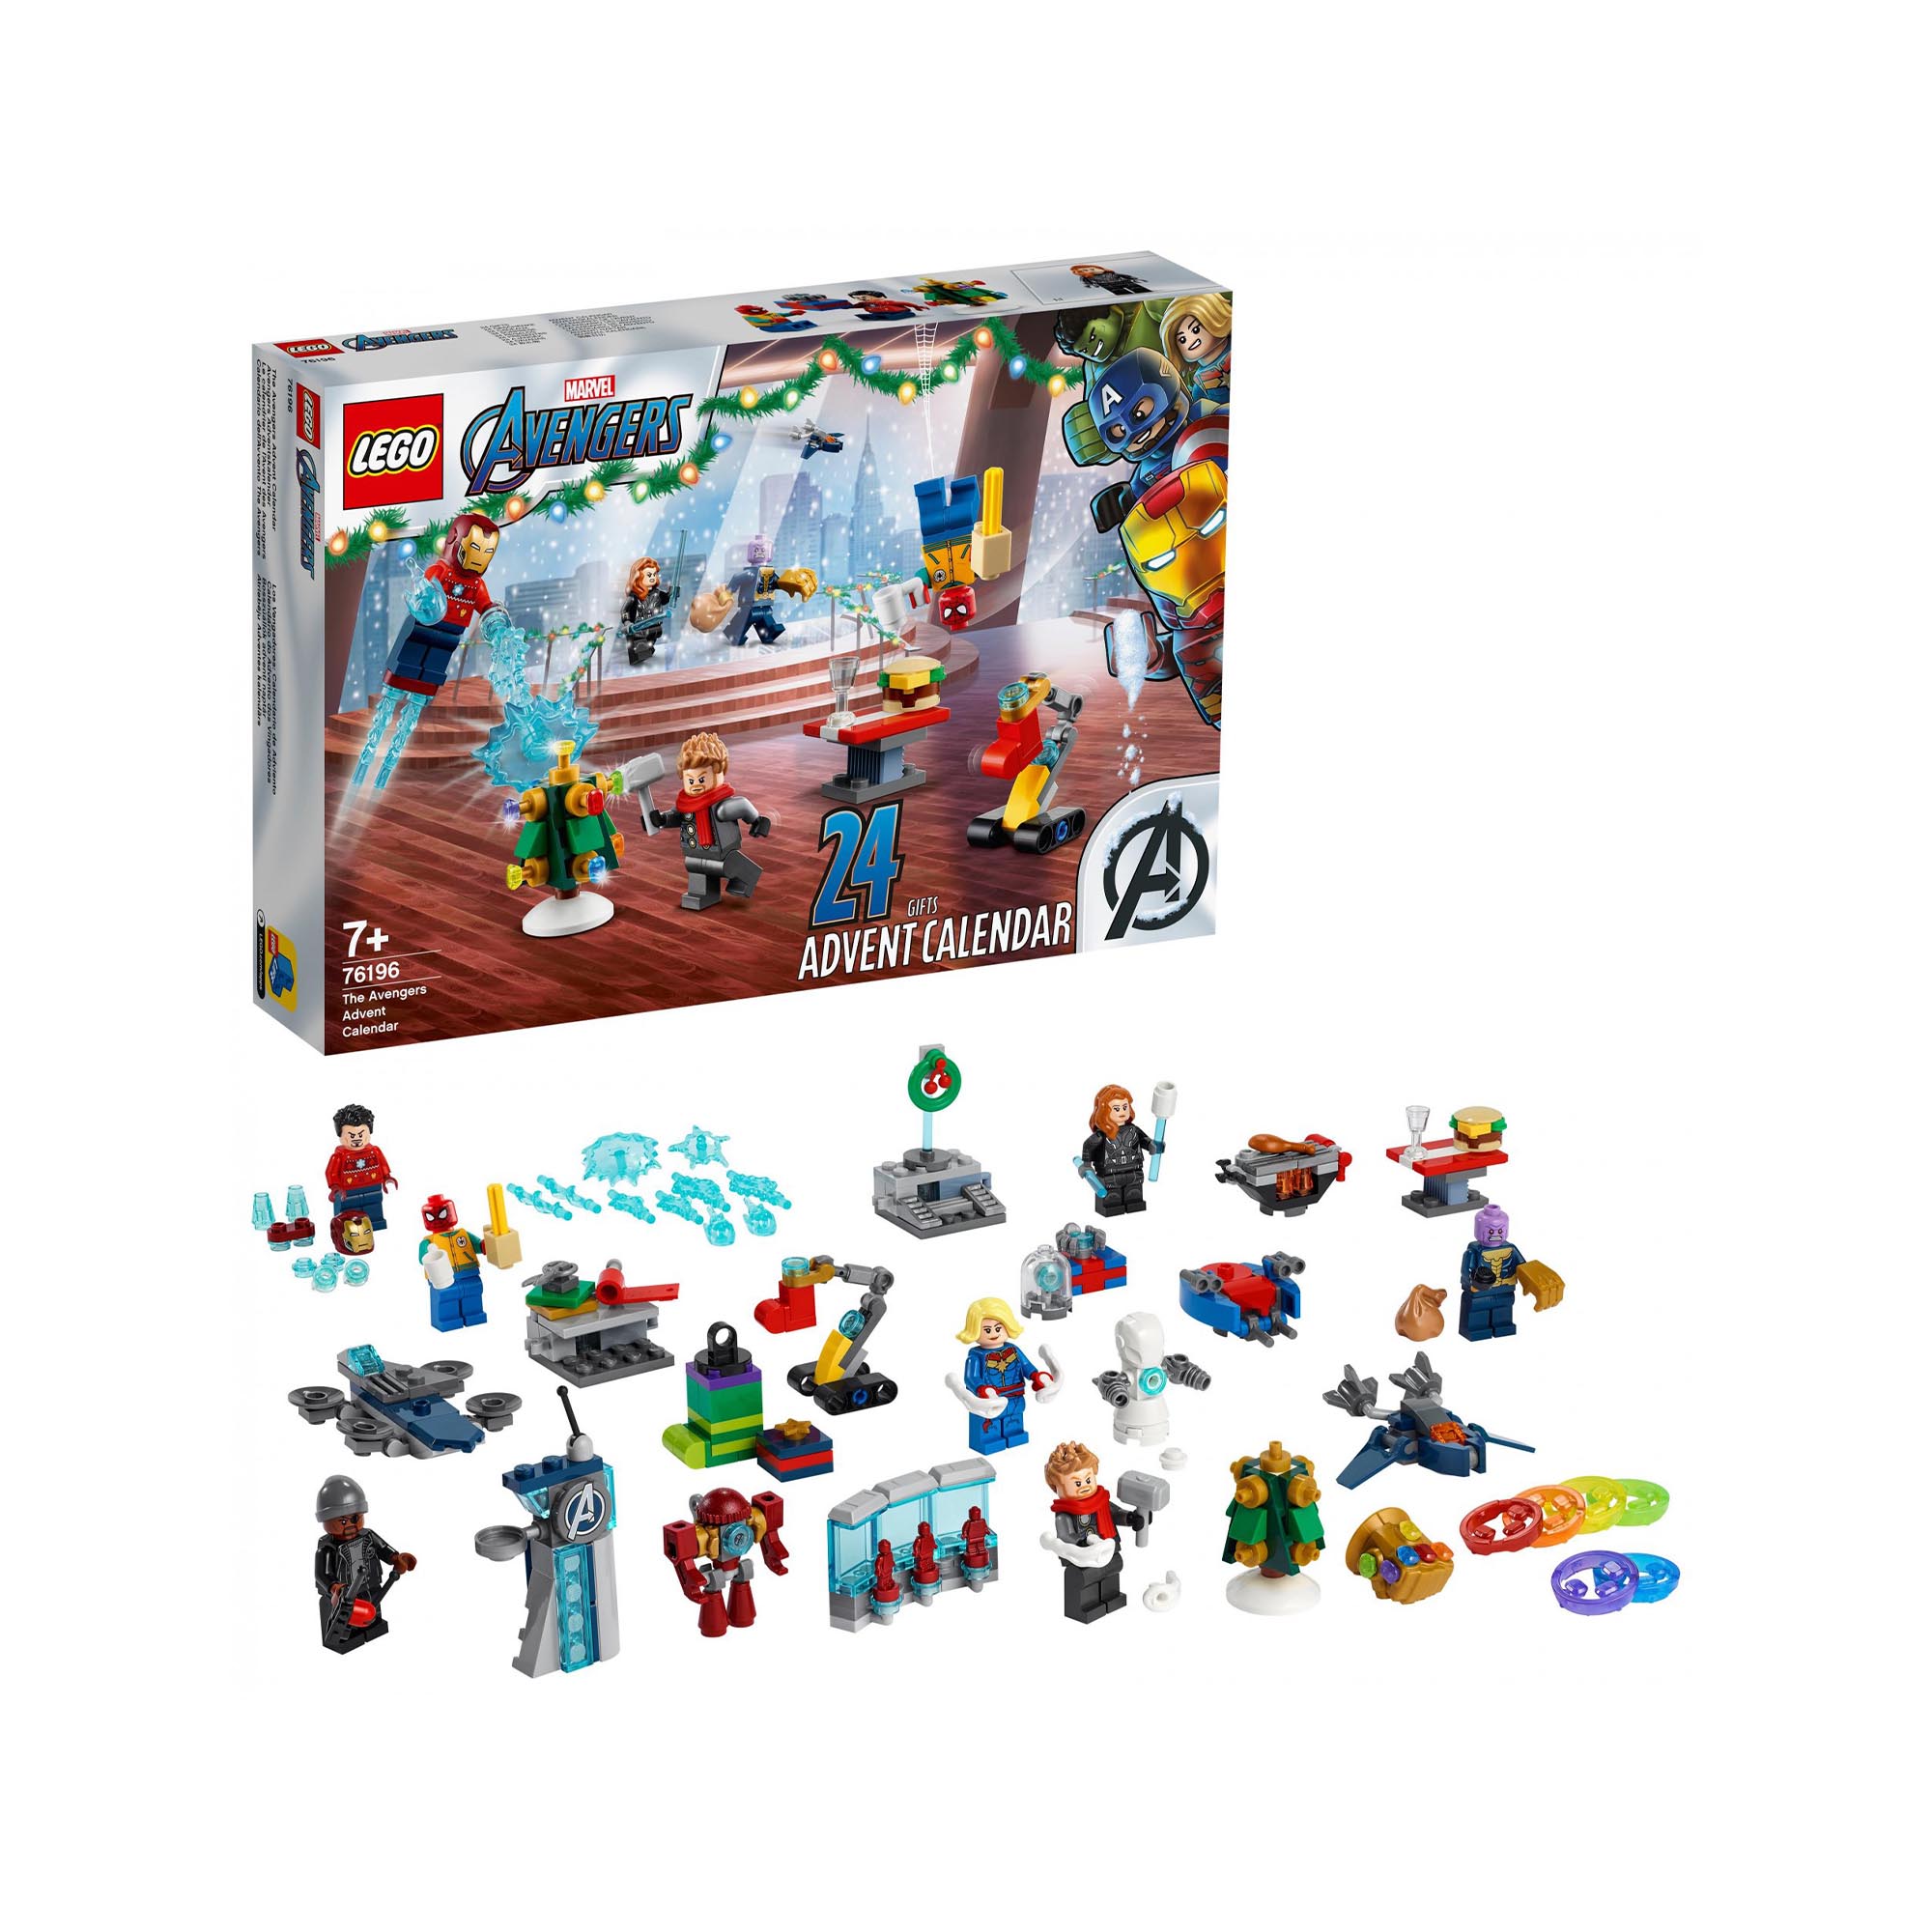 LEGO Marvel Calendario dell'Avvento The Avengers 2021, con Spider-Man e Iron Ma 76196, , large